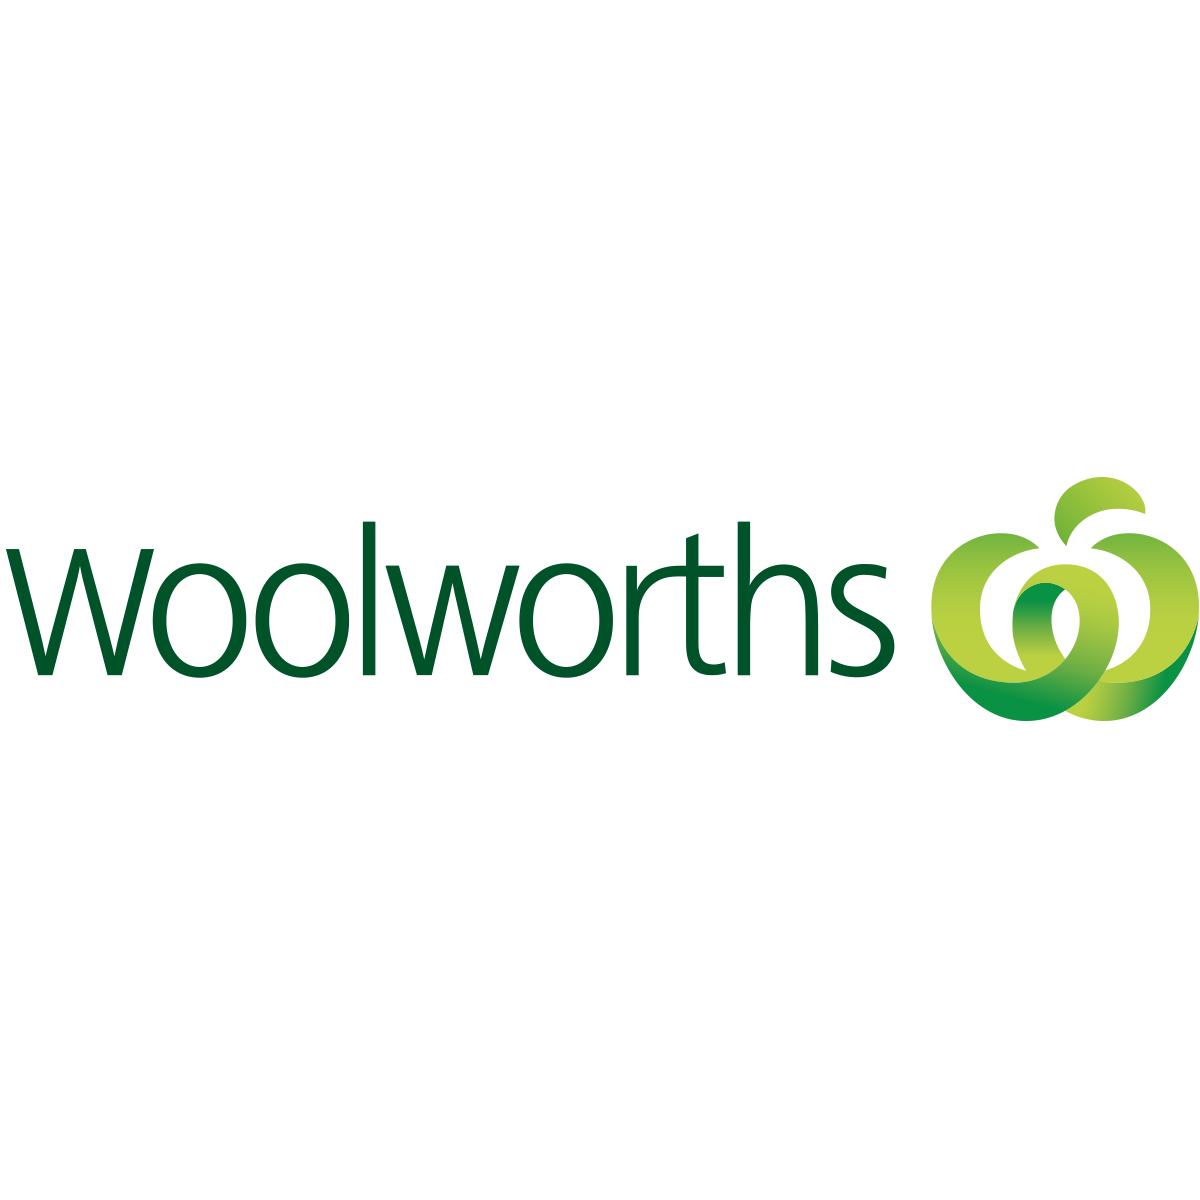 www.woolworths.com.au